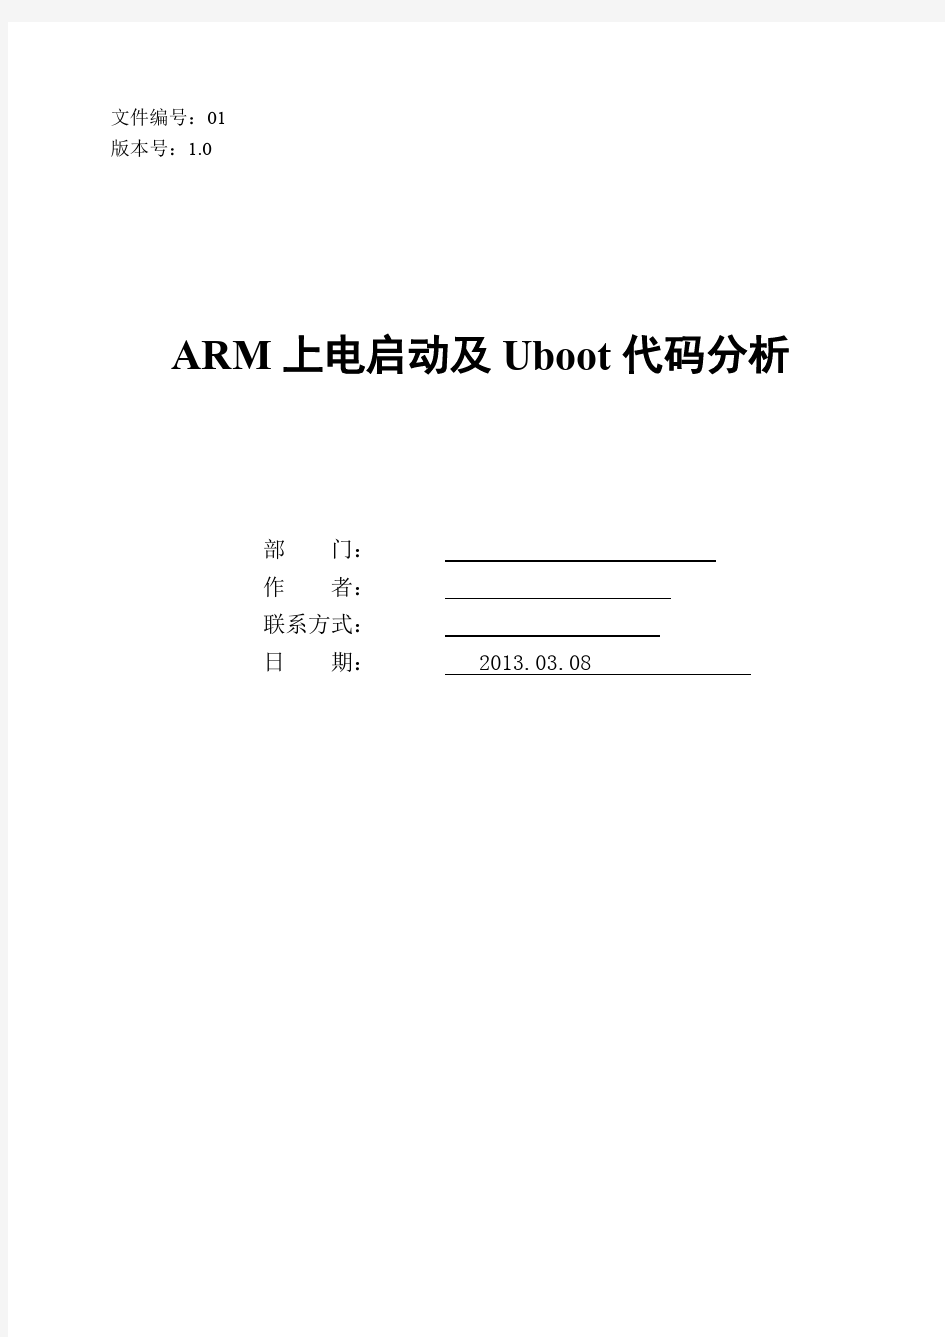 ARM上电启动及Uboot代码分析